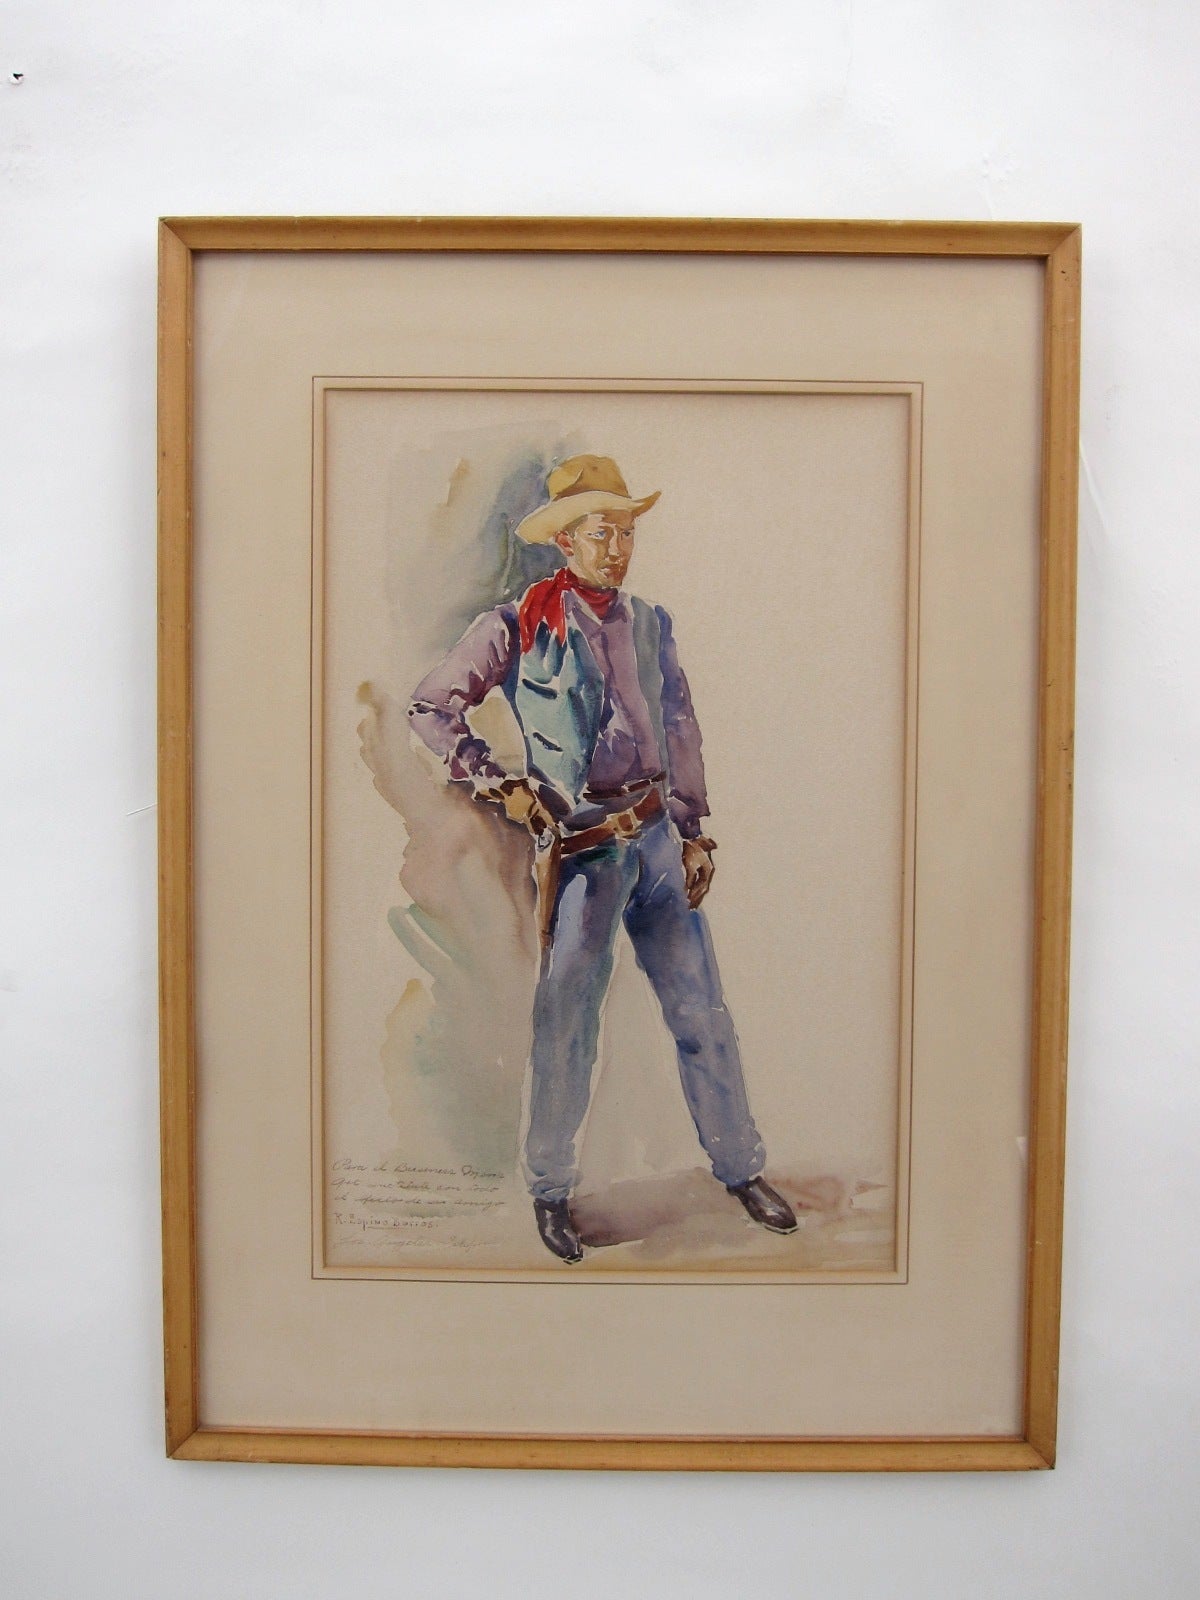 Cowboy Watercolor by Ramón Espino Barros